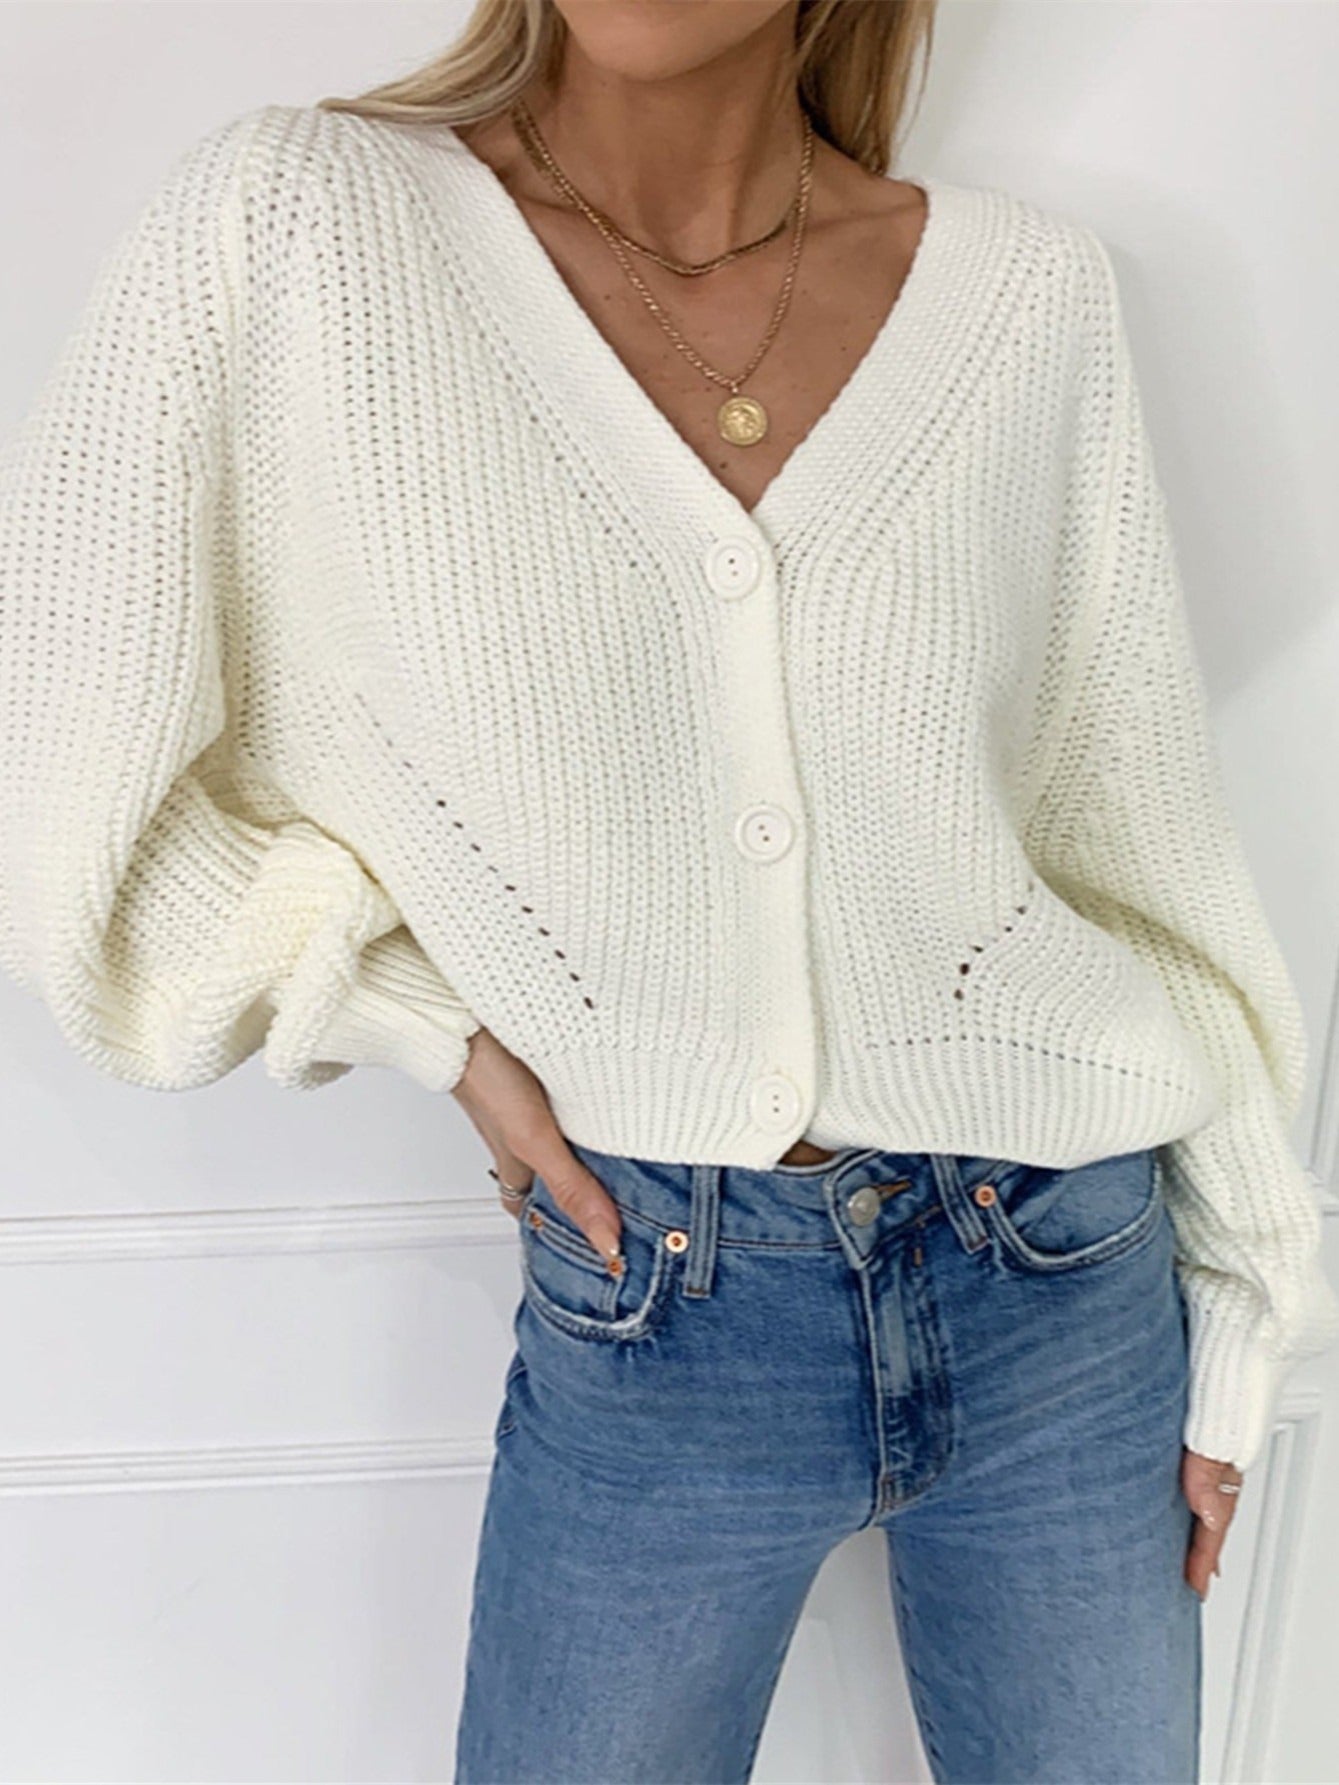 Vzyzv Women's Sweater Solid V-neck Button Up Knit Cardigan